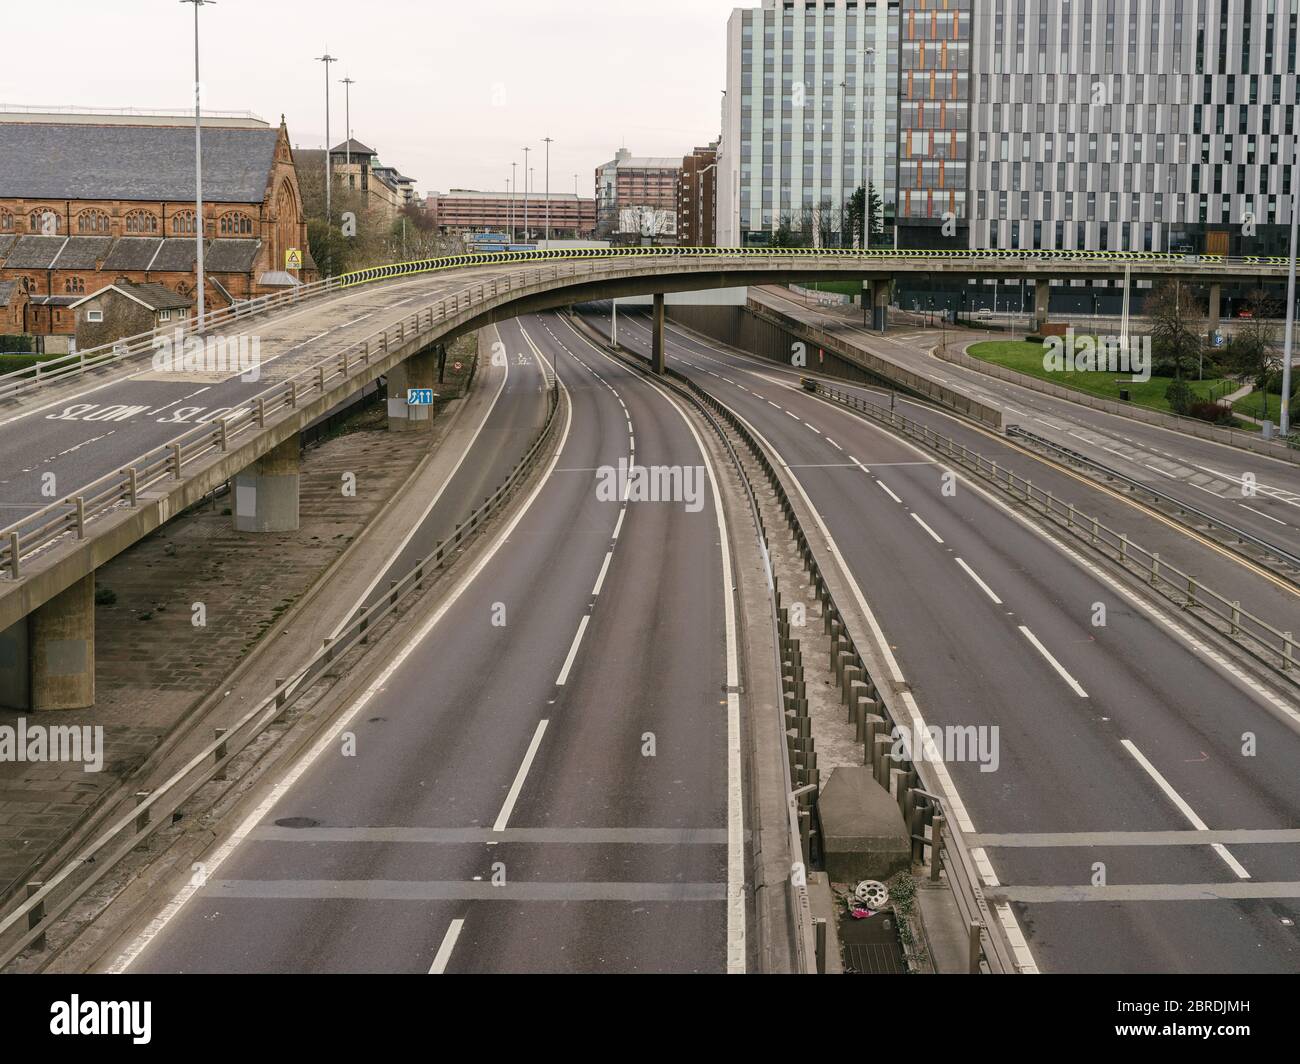 L'autoroute M8, généralement très fréquentée, de Charing Cross, qui traverse la ville de Glasgow, illustre le fait que le gouvernement se respecte, les directives de distanciation sociale et les avis de « séjour à domicile » lors de la pandémie du coronavirus. Banque D'Images